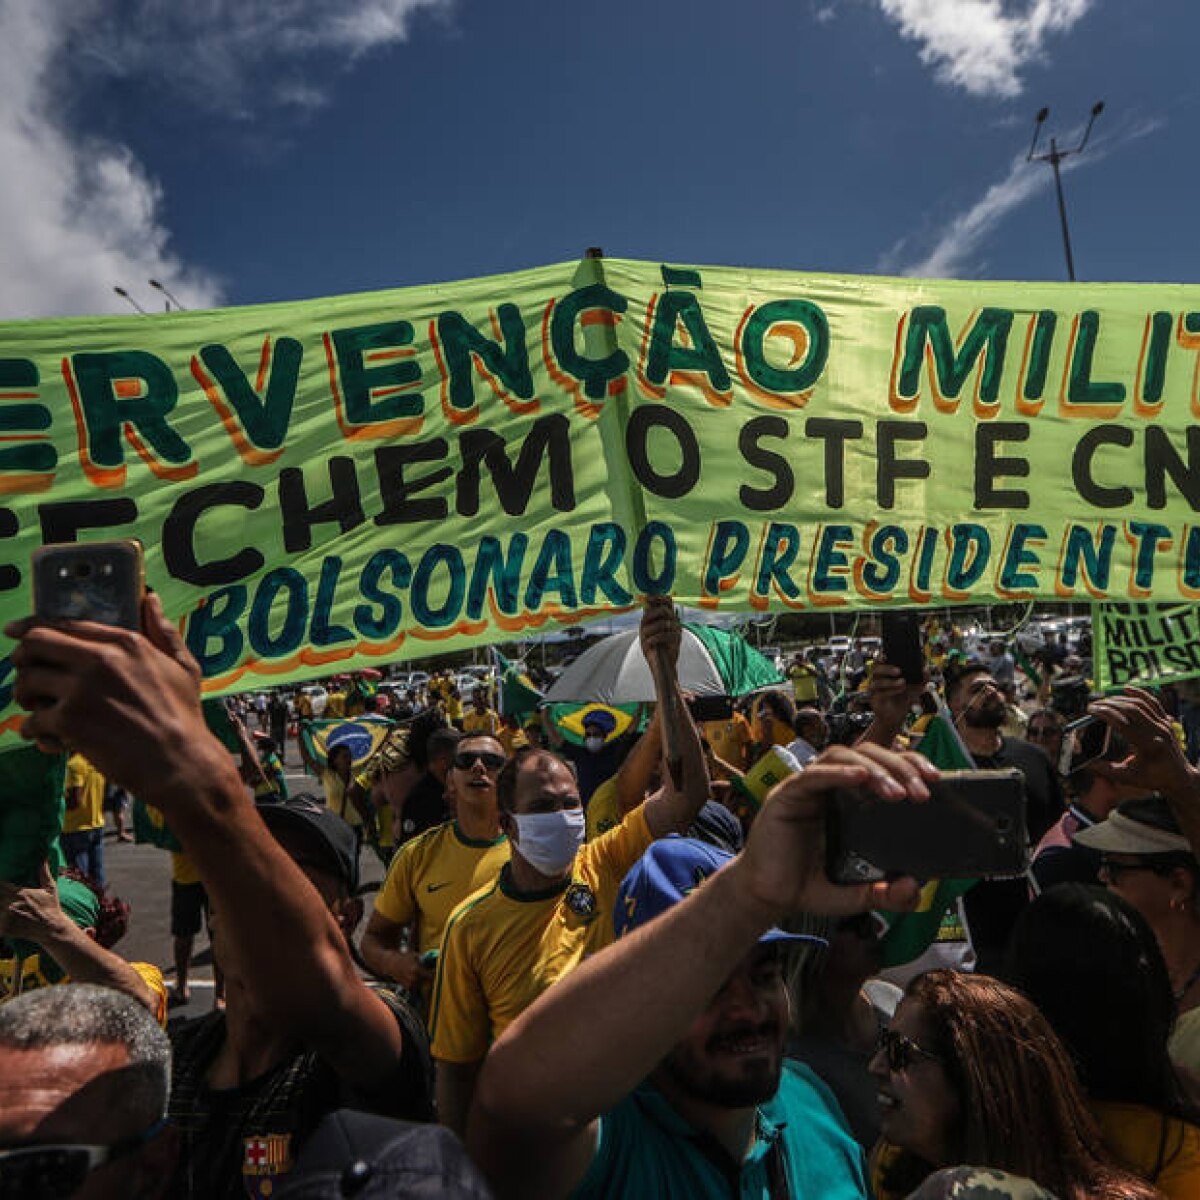 Discurso de Bolsonaro 'κίνητρα desobediência' e é 'escalada ...